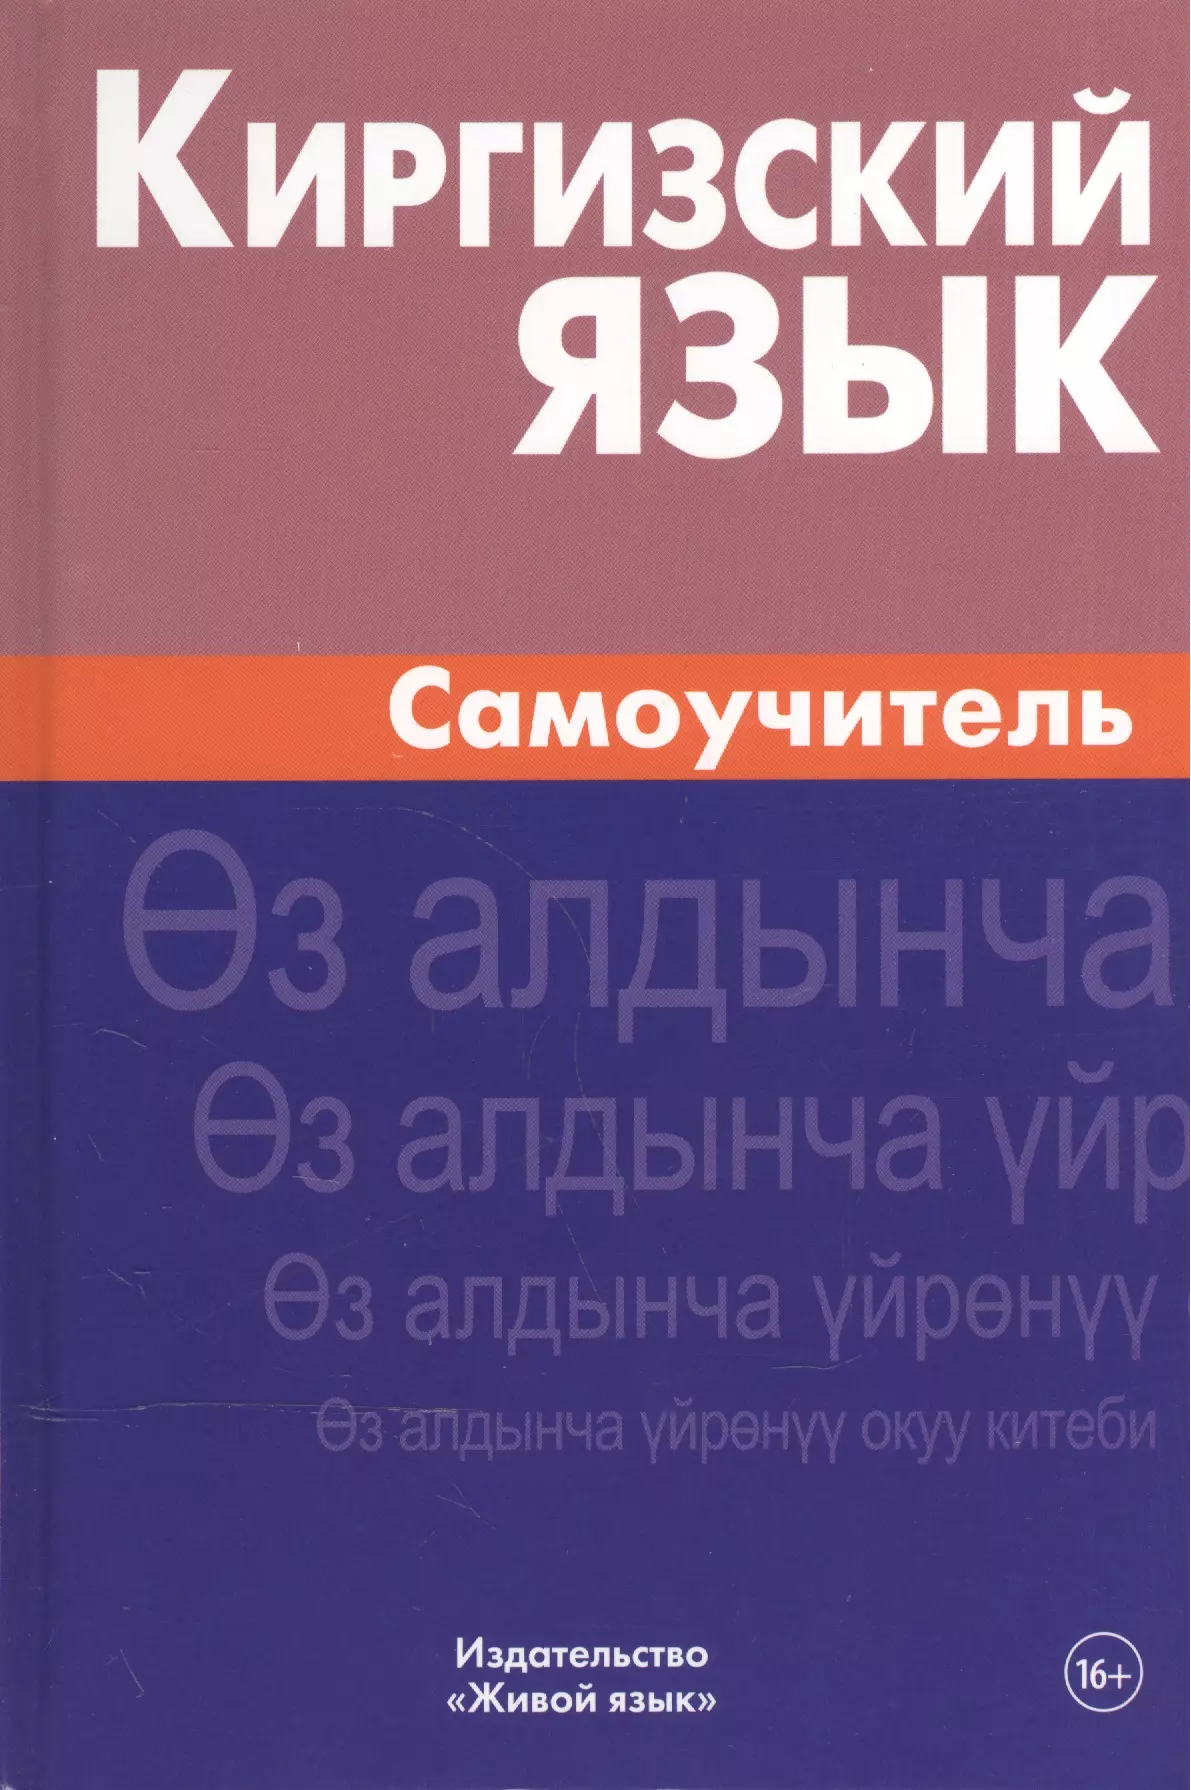 Хулхачиева Женишкуль - Киргизский язык. Самоучитель